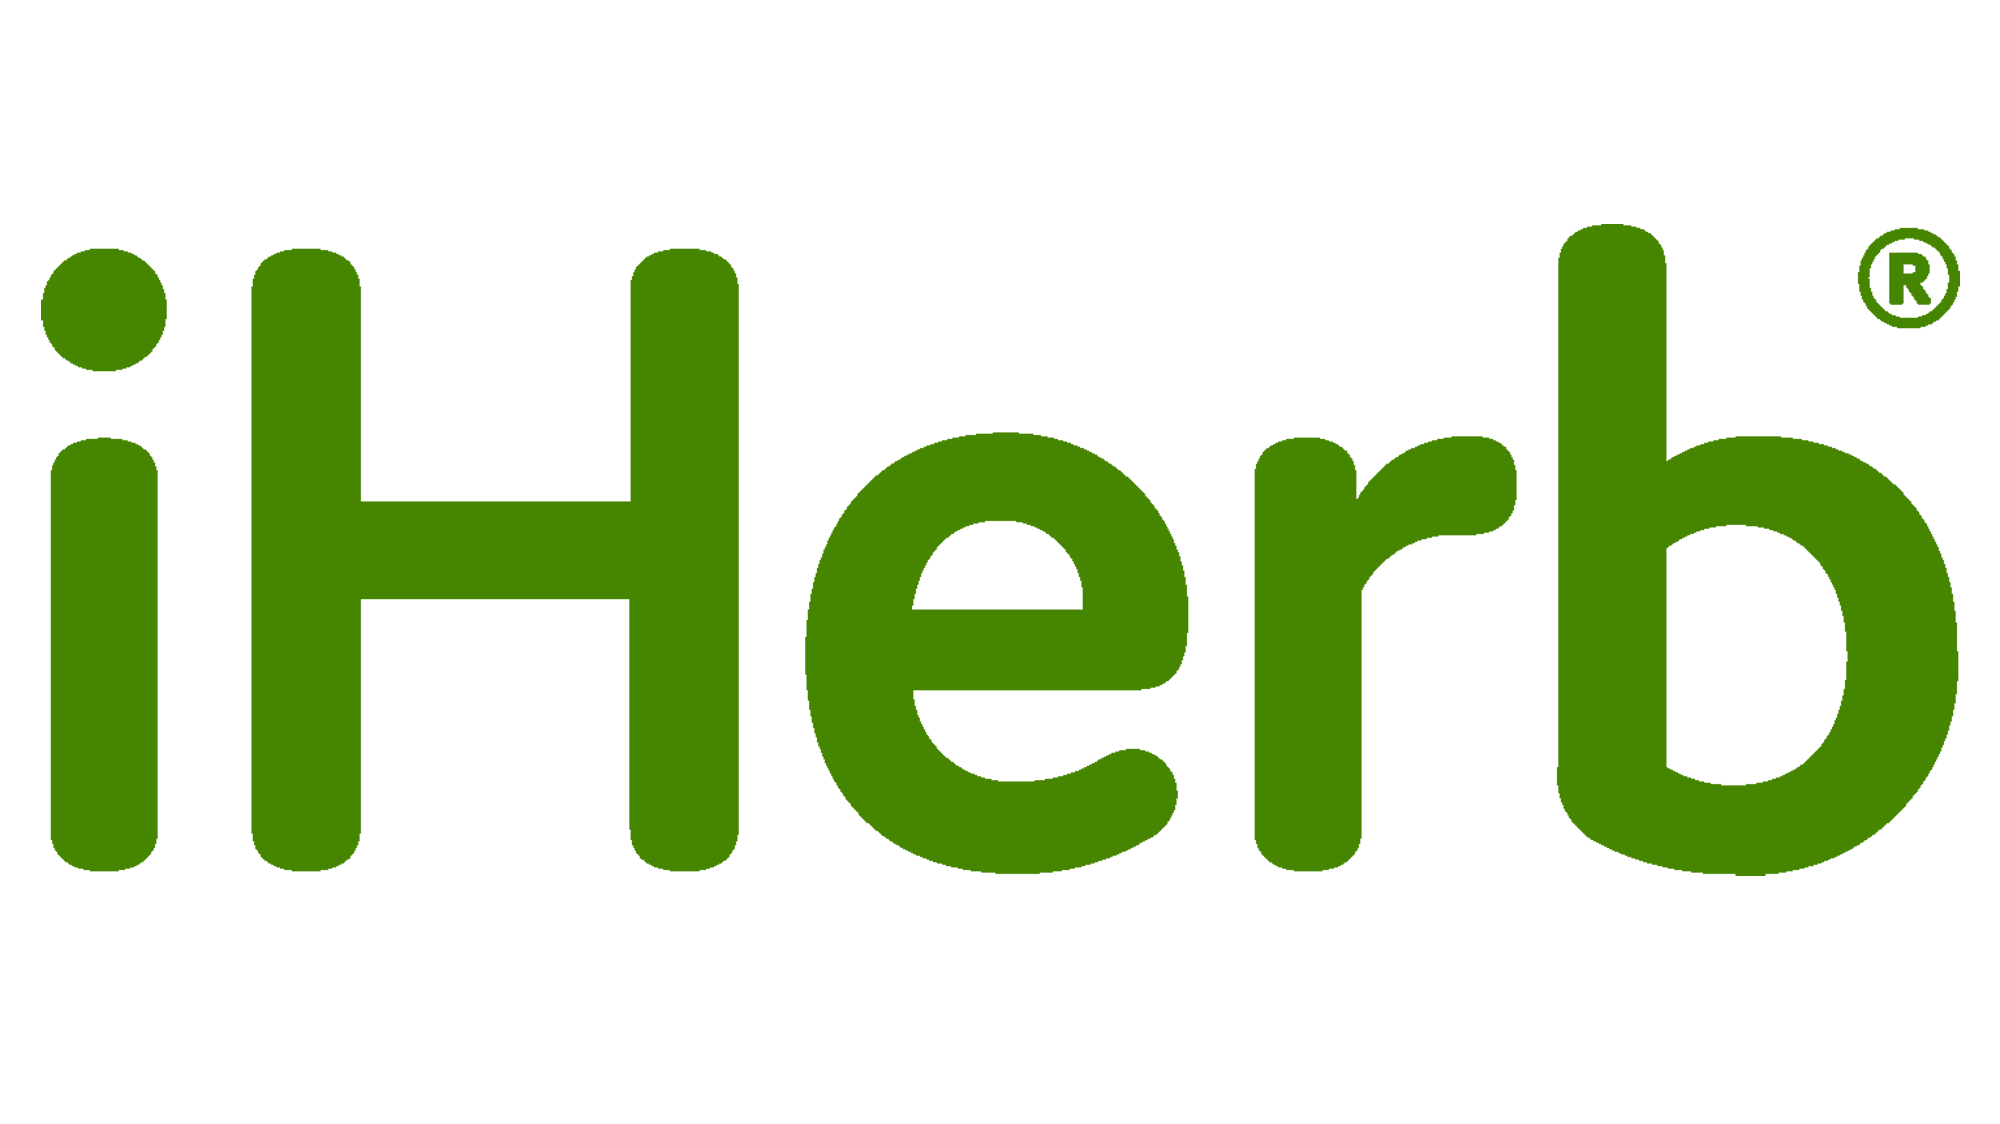 iHerb Logo